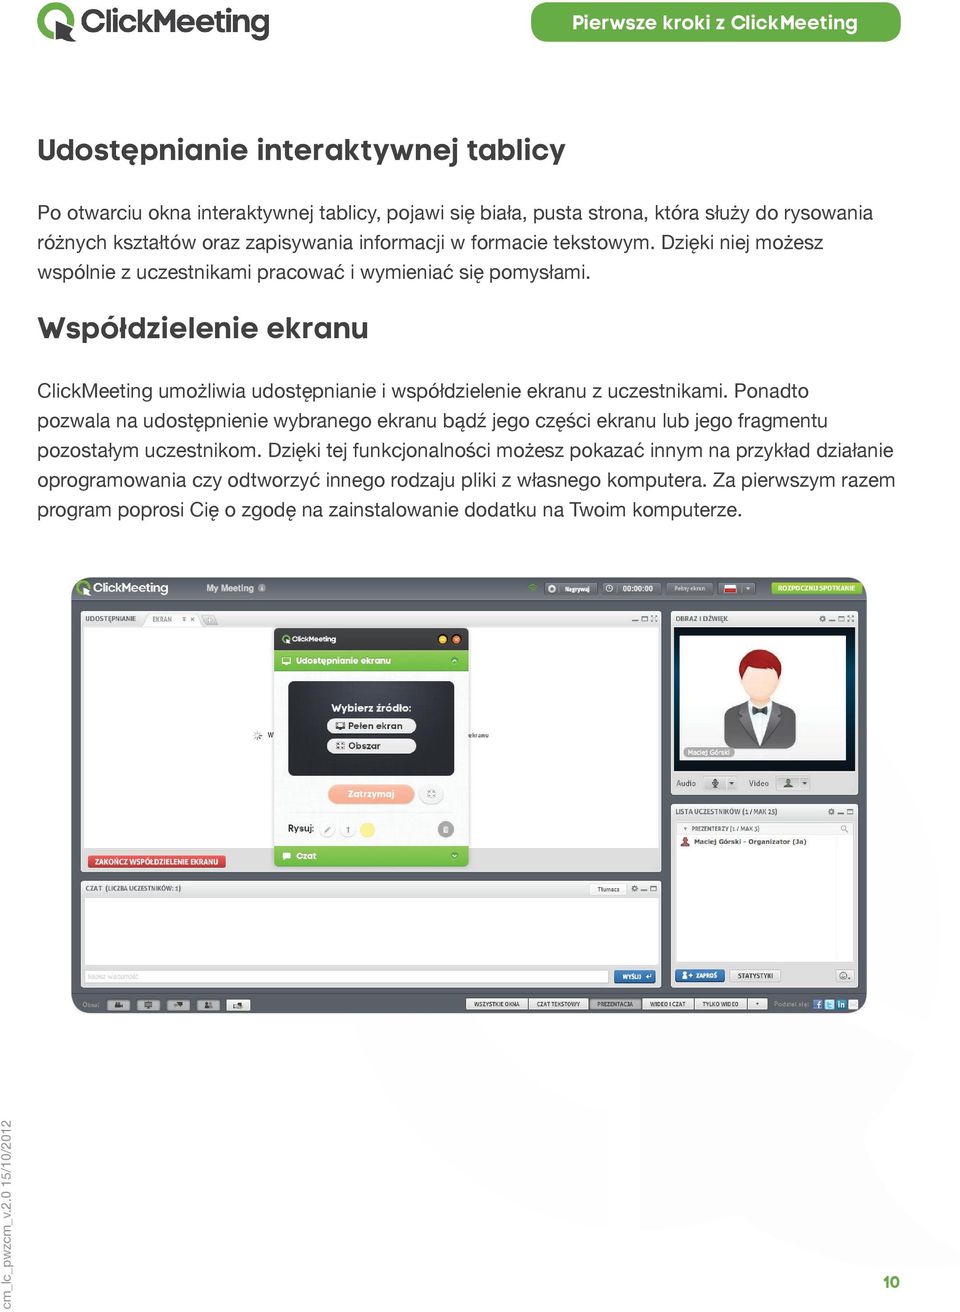 Współdzielenie ekranu ClickMeeting umożliwia udostępnianie i współdzielenie ekranu z uczestnikami.